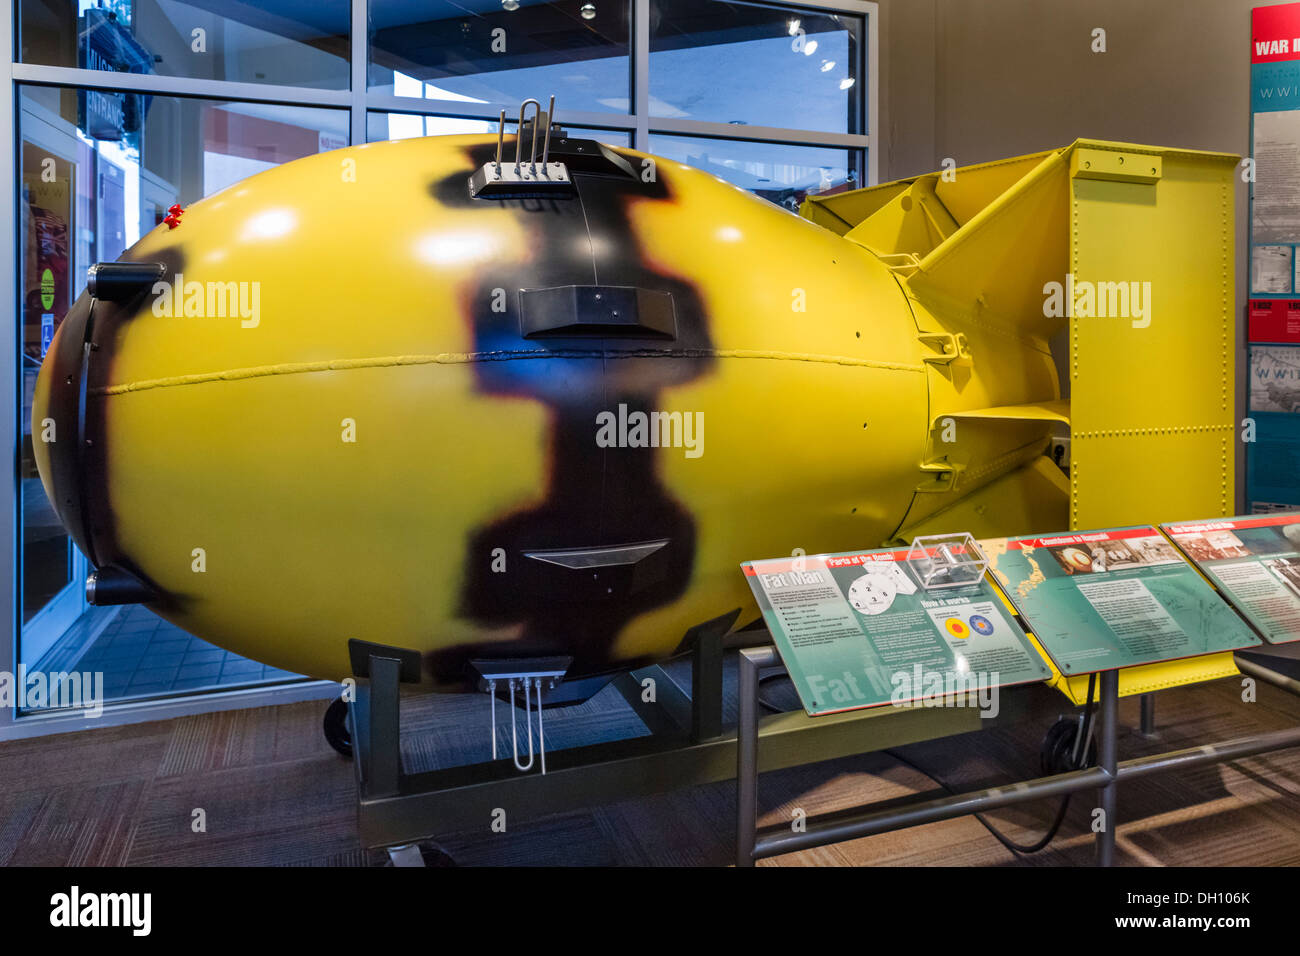 Bomba nuclear. Modelo de la bomba atómica "Fat Man' cayó onNagasaki, Japón en la segunda guerra mundial, el Bradbury Science Museum, Los Alamos, Nuevo México, EE.UU. Foto de stock